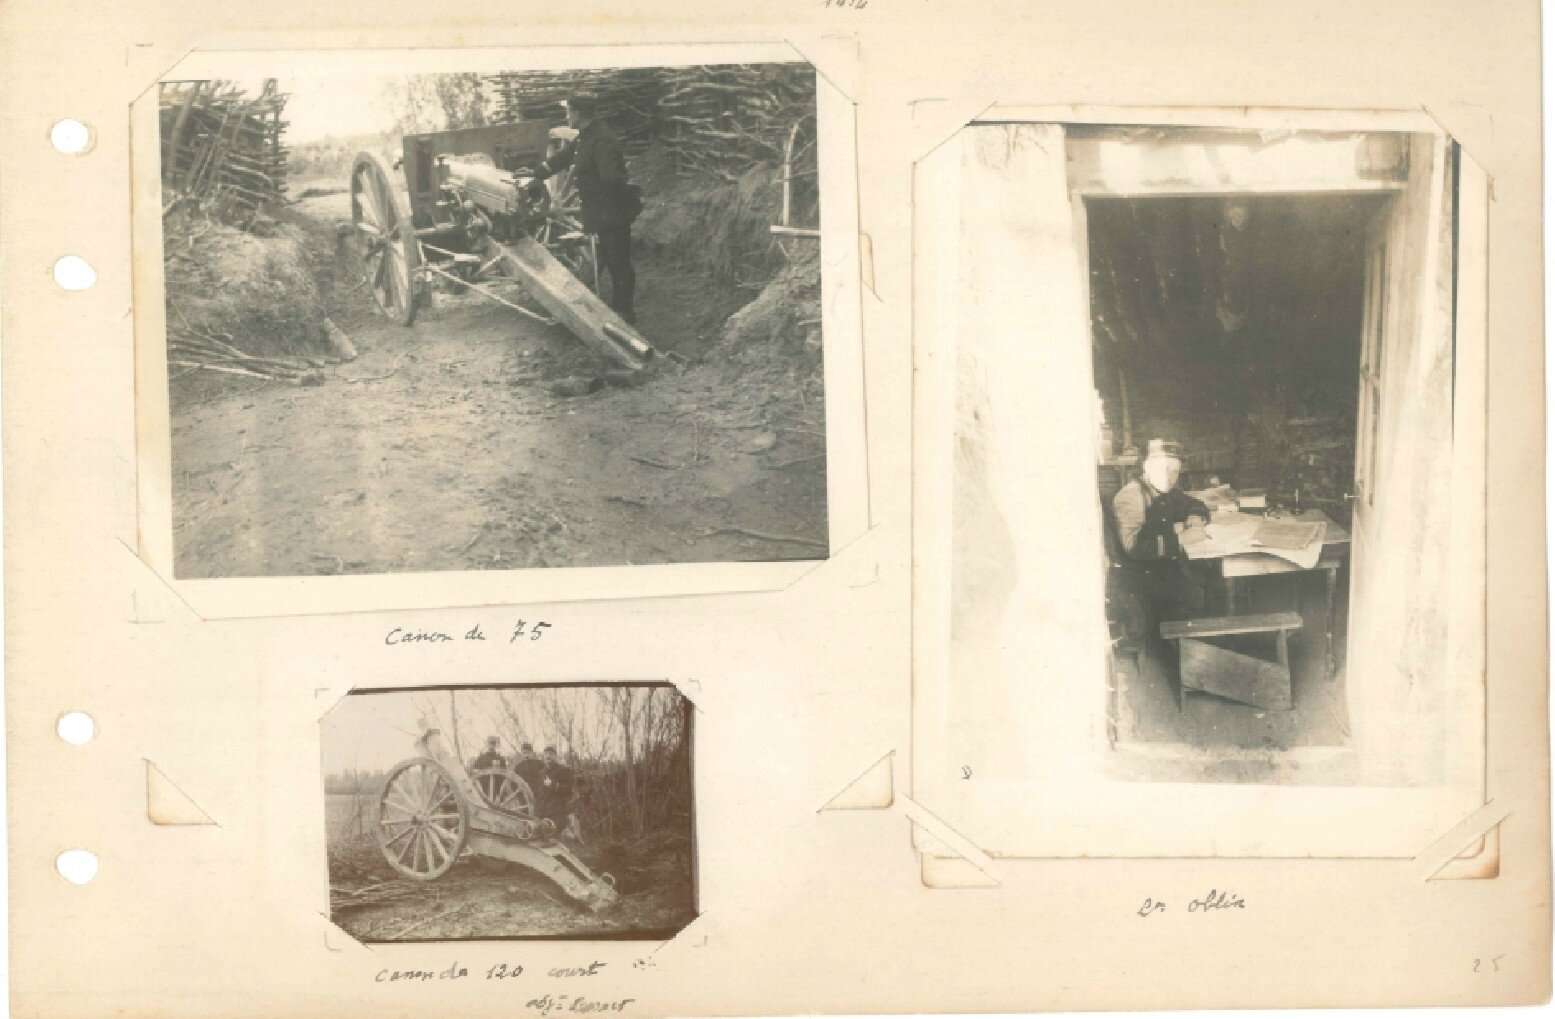 p.025 - Front de l’Aisne (13 septembre 1914 – 22 mai 1915)